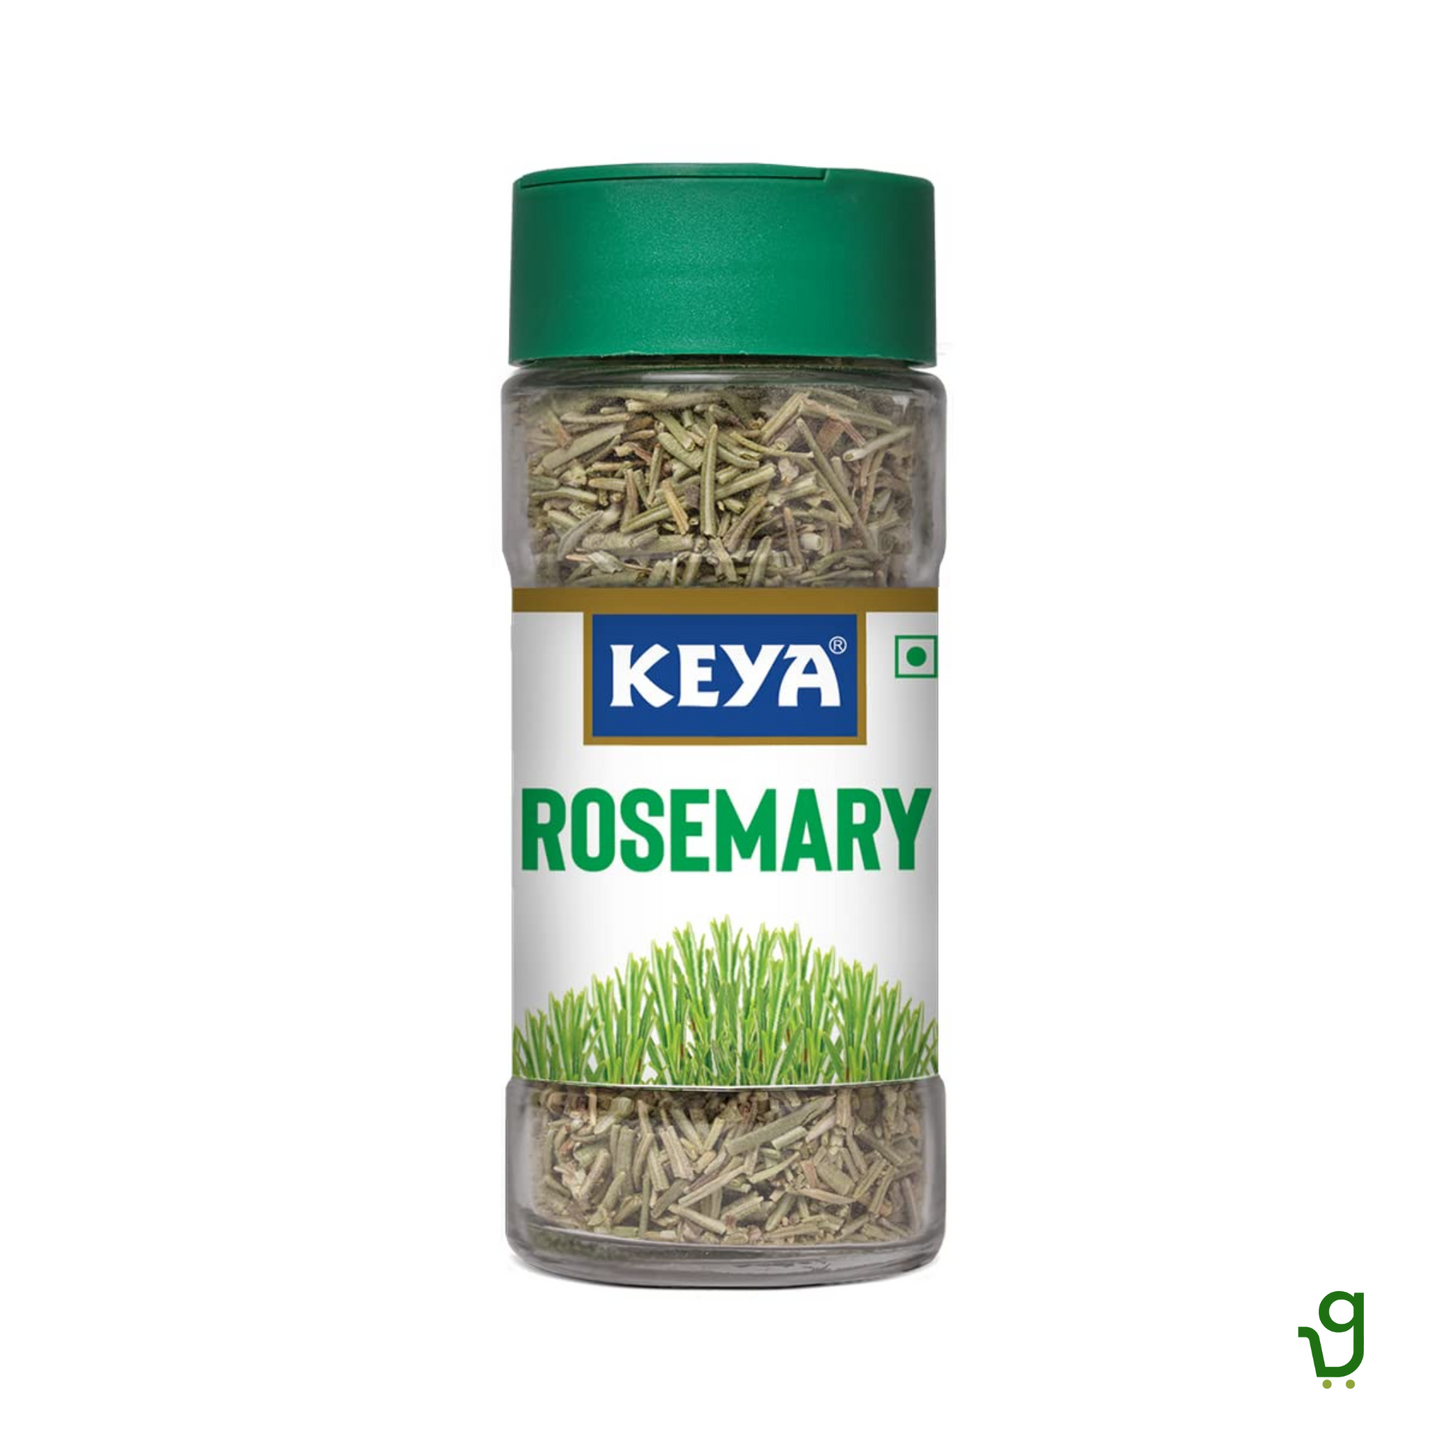 Keya Rosemary 17g